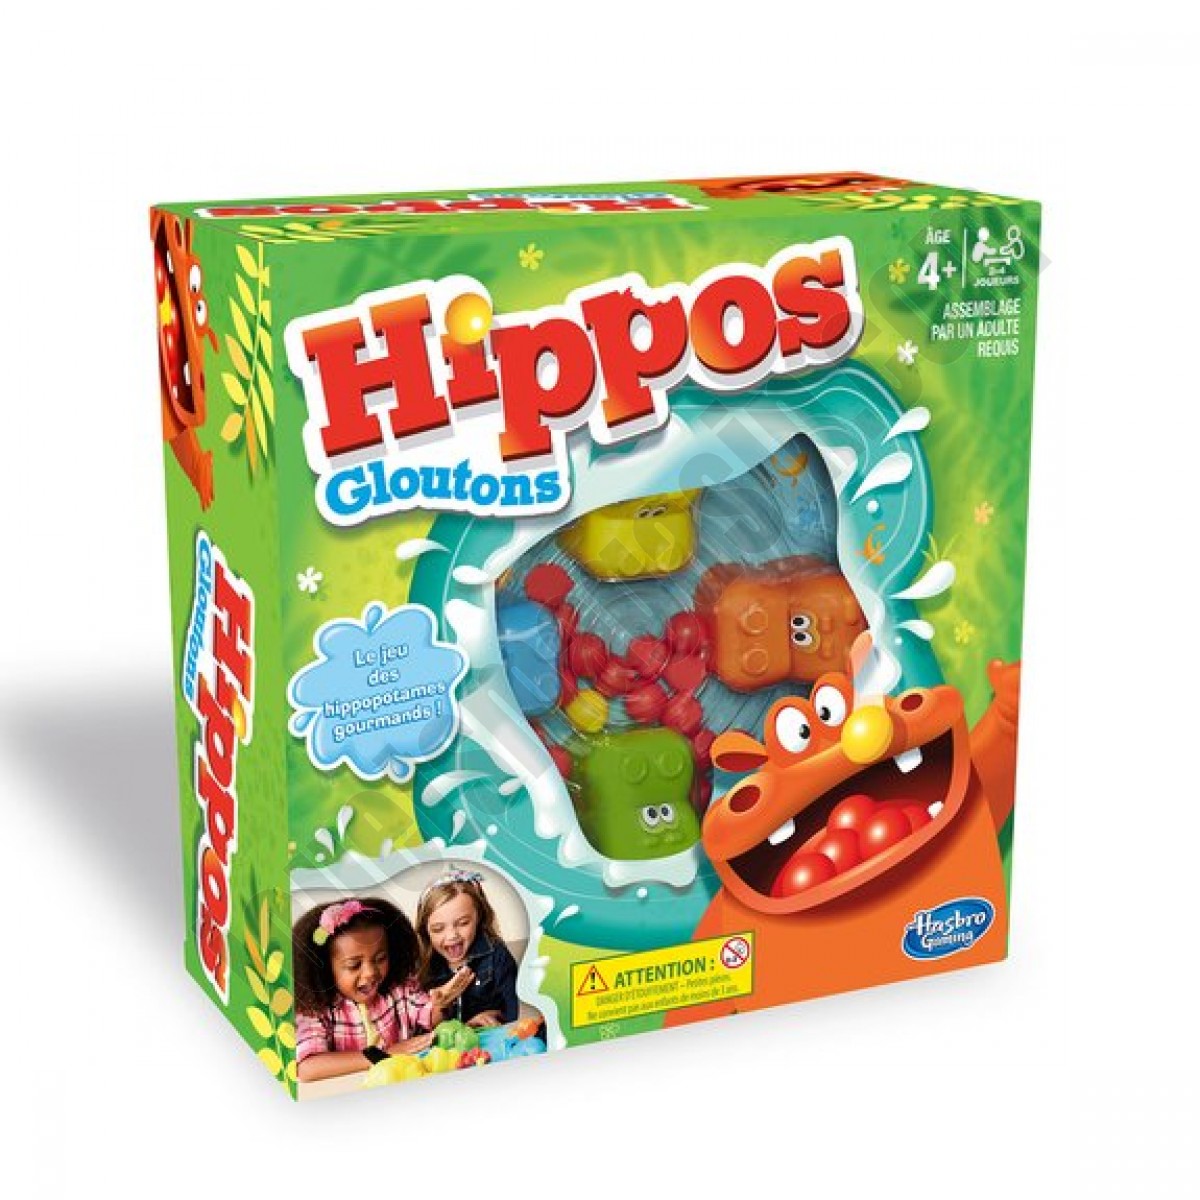 Hippos gloutons ◆◆◆ Nouveau - Hippos gloutons ◆◆◆ Nouveau